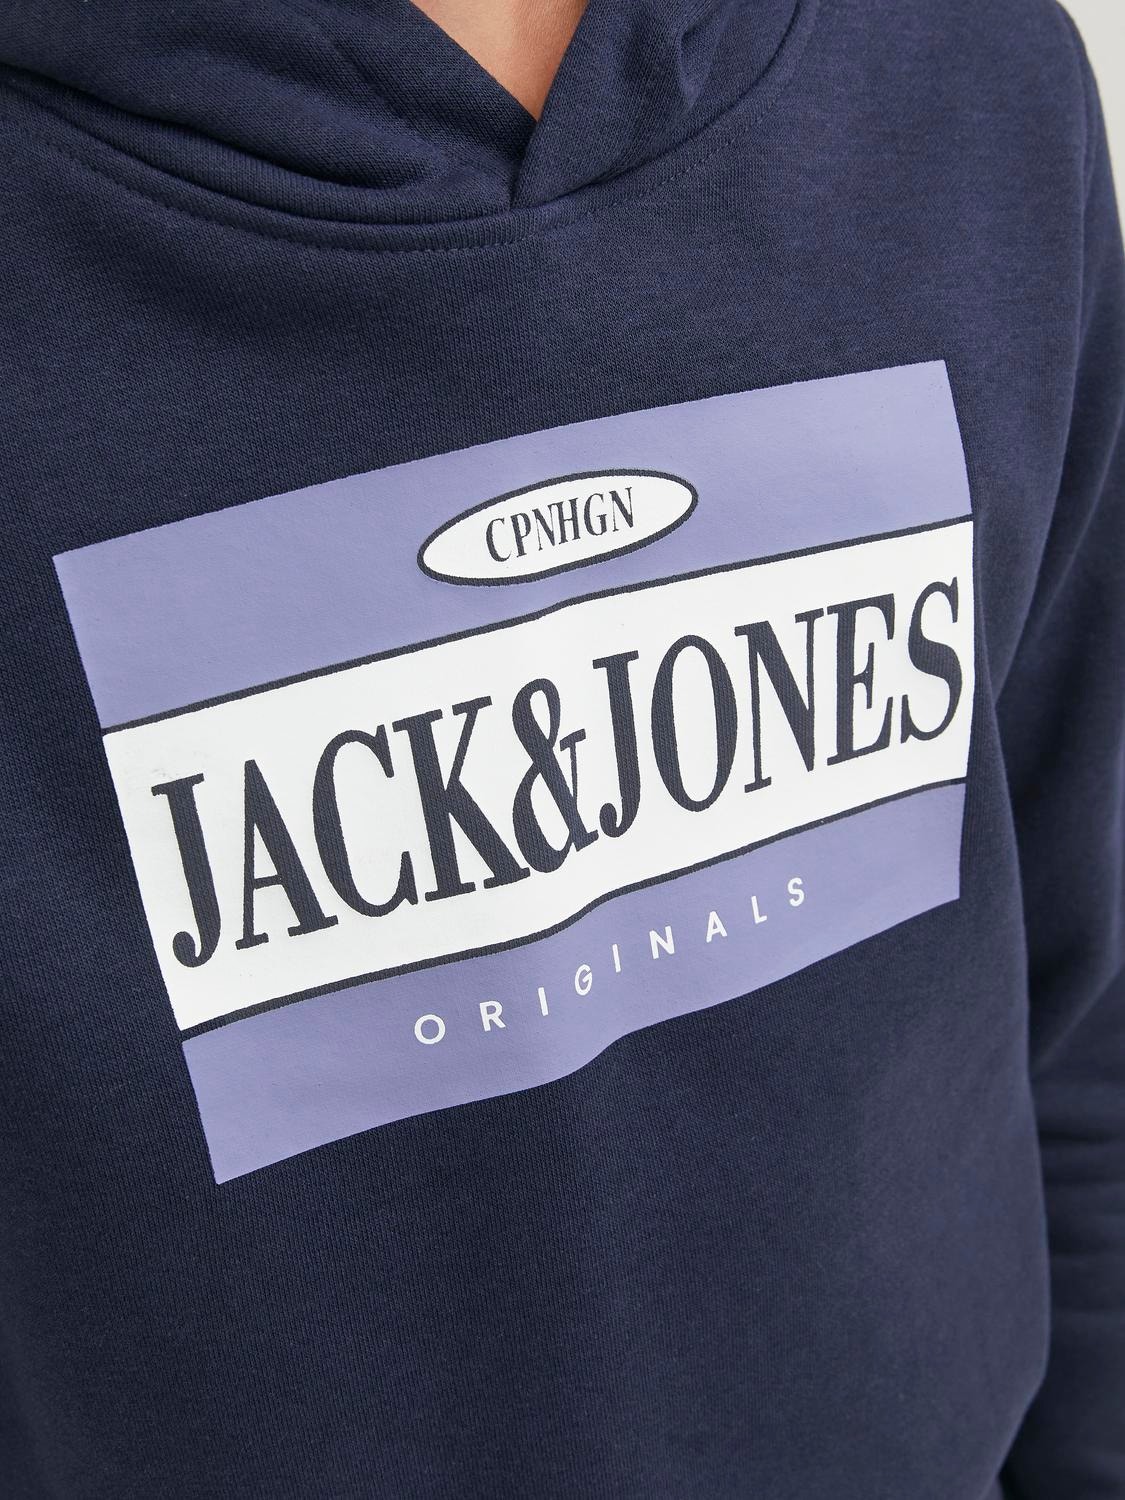 Jack & Jones Z logo Bluza z kapturem Dla chłopców -Navy Blazer - 12242465